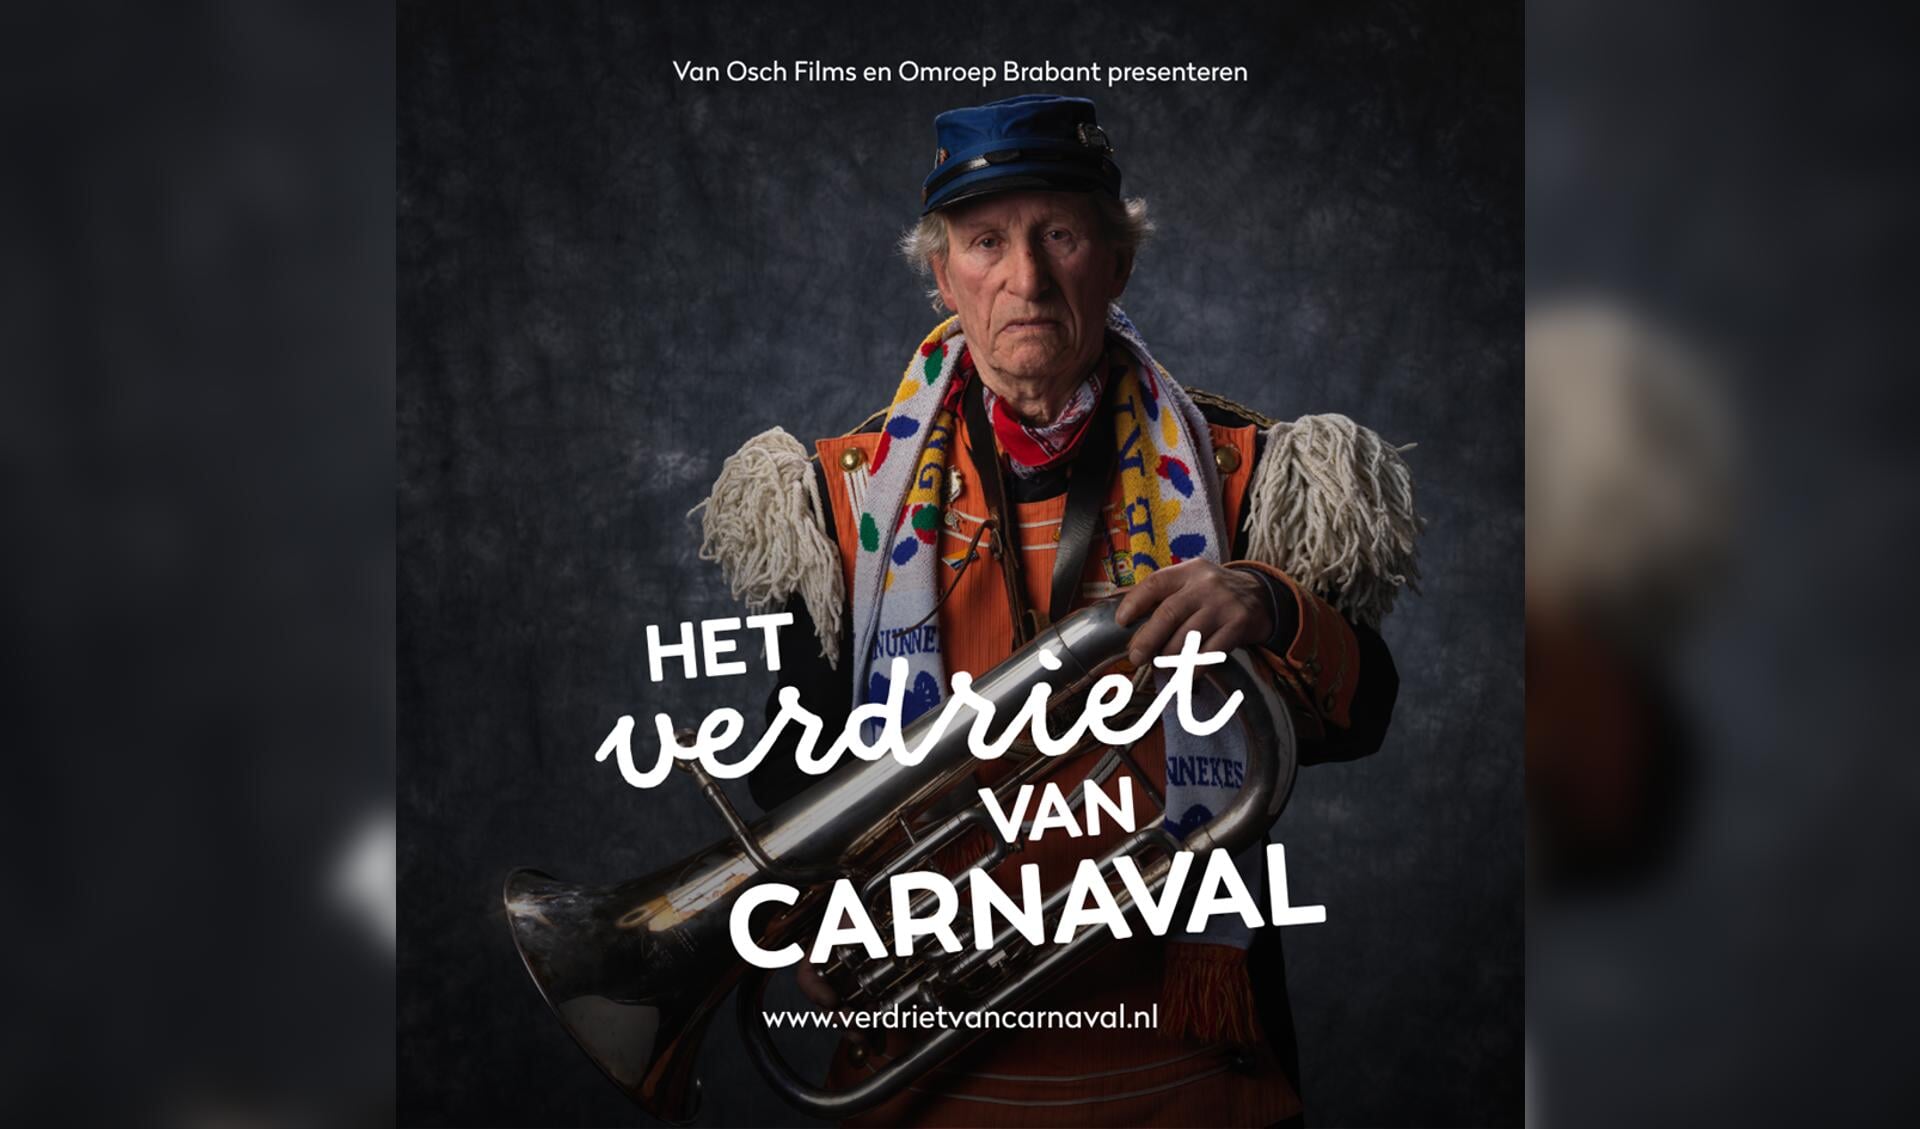 Het verdriet van carnaval is te zien in De Mattelier. Foto: PR